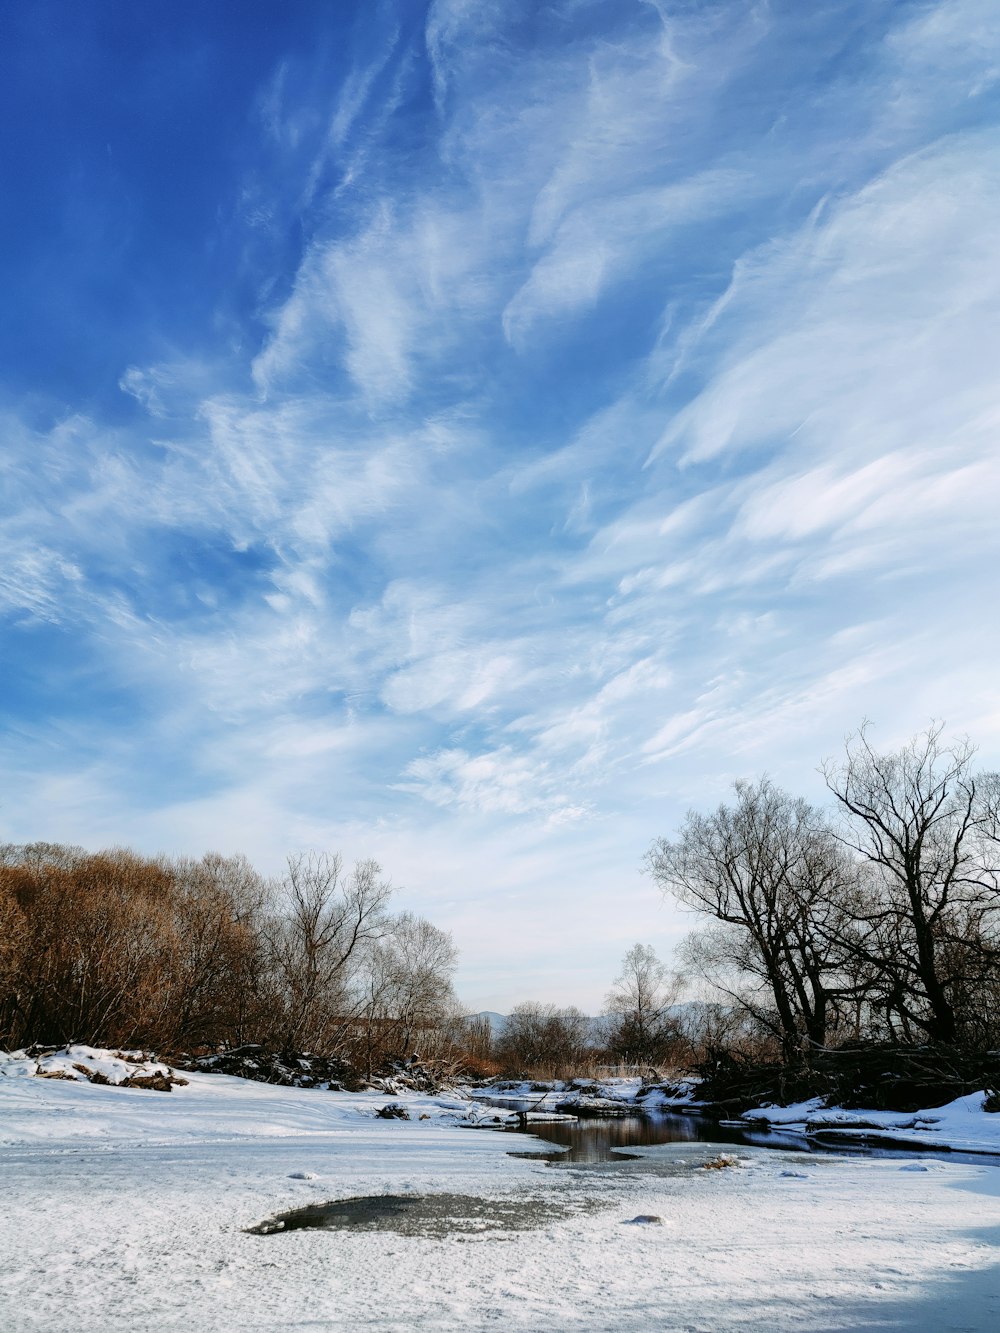 árvores nuas no solo coberto de neve sob o céu nublado azul e branco durante o dia